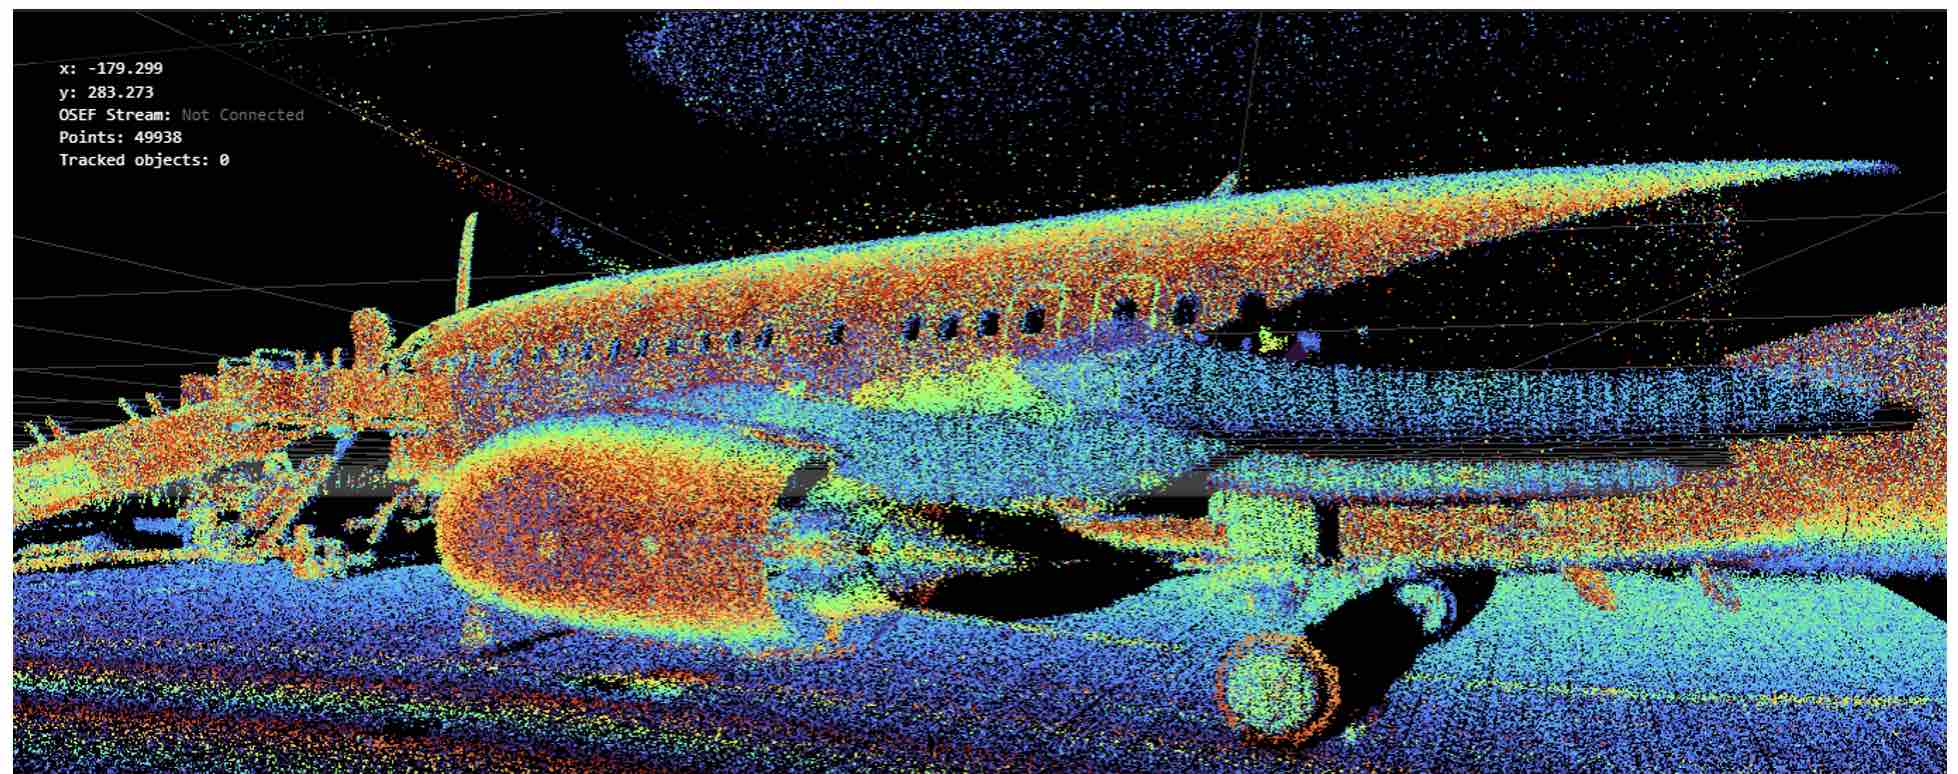 Iridesense Multispectral Lidar 3D view of an aircraft